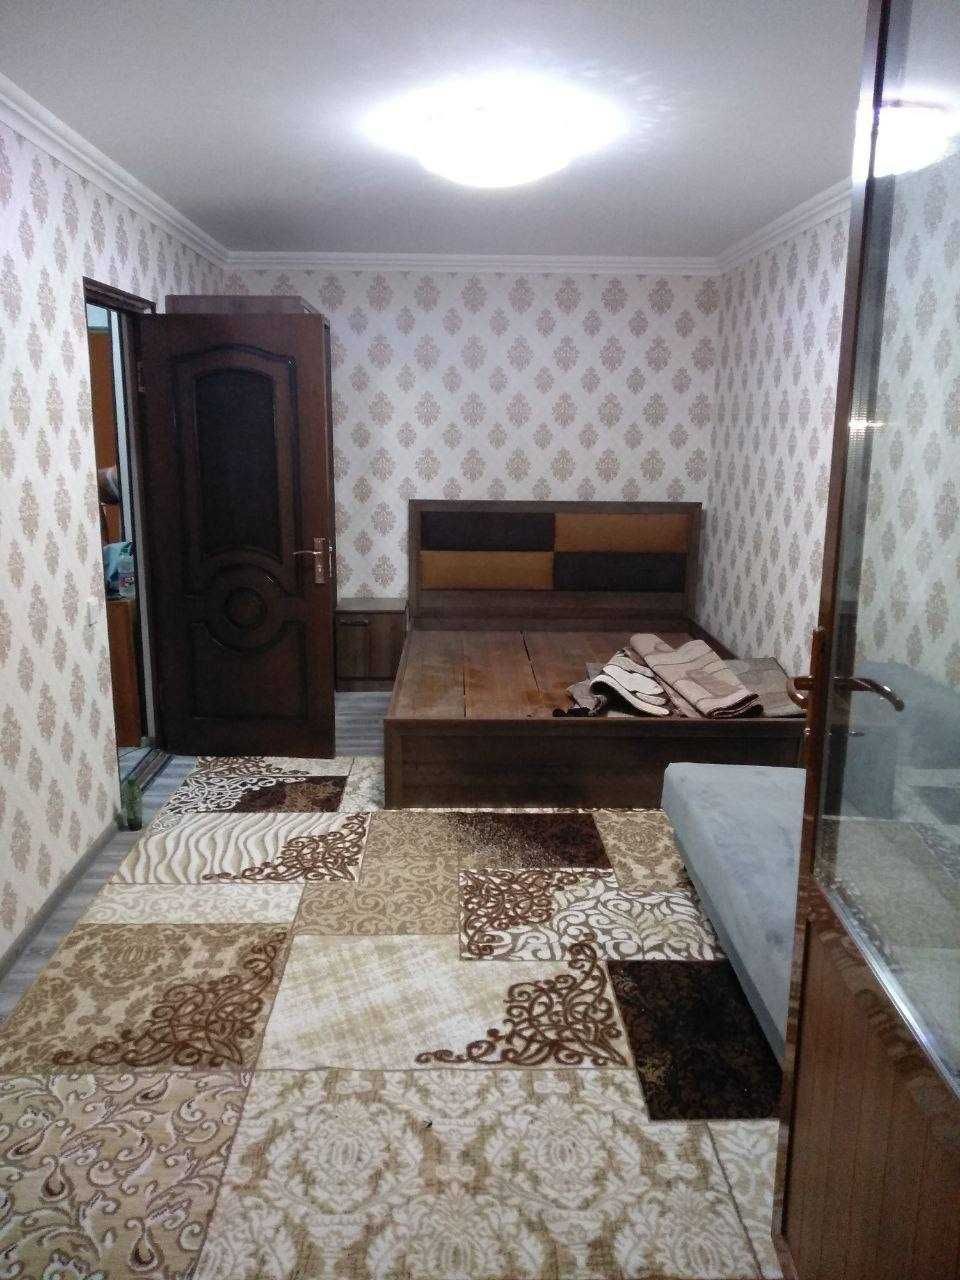 СУПЕРЦЕНА! 1-комнатная квартира на НОВОМОСКОВСКОЙ, Кирпичный дом